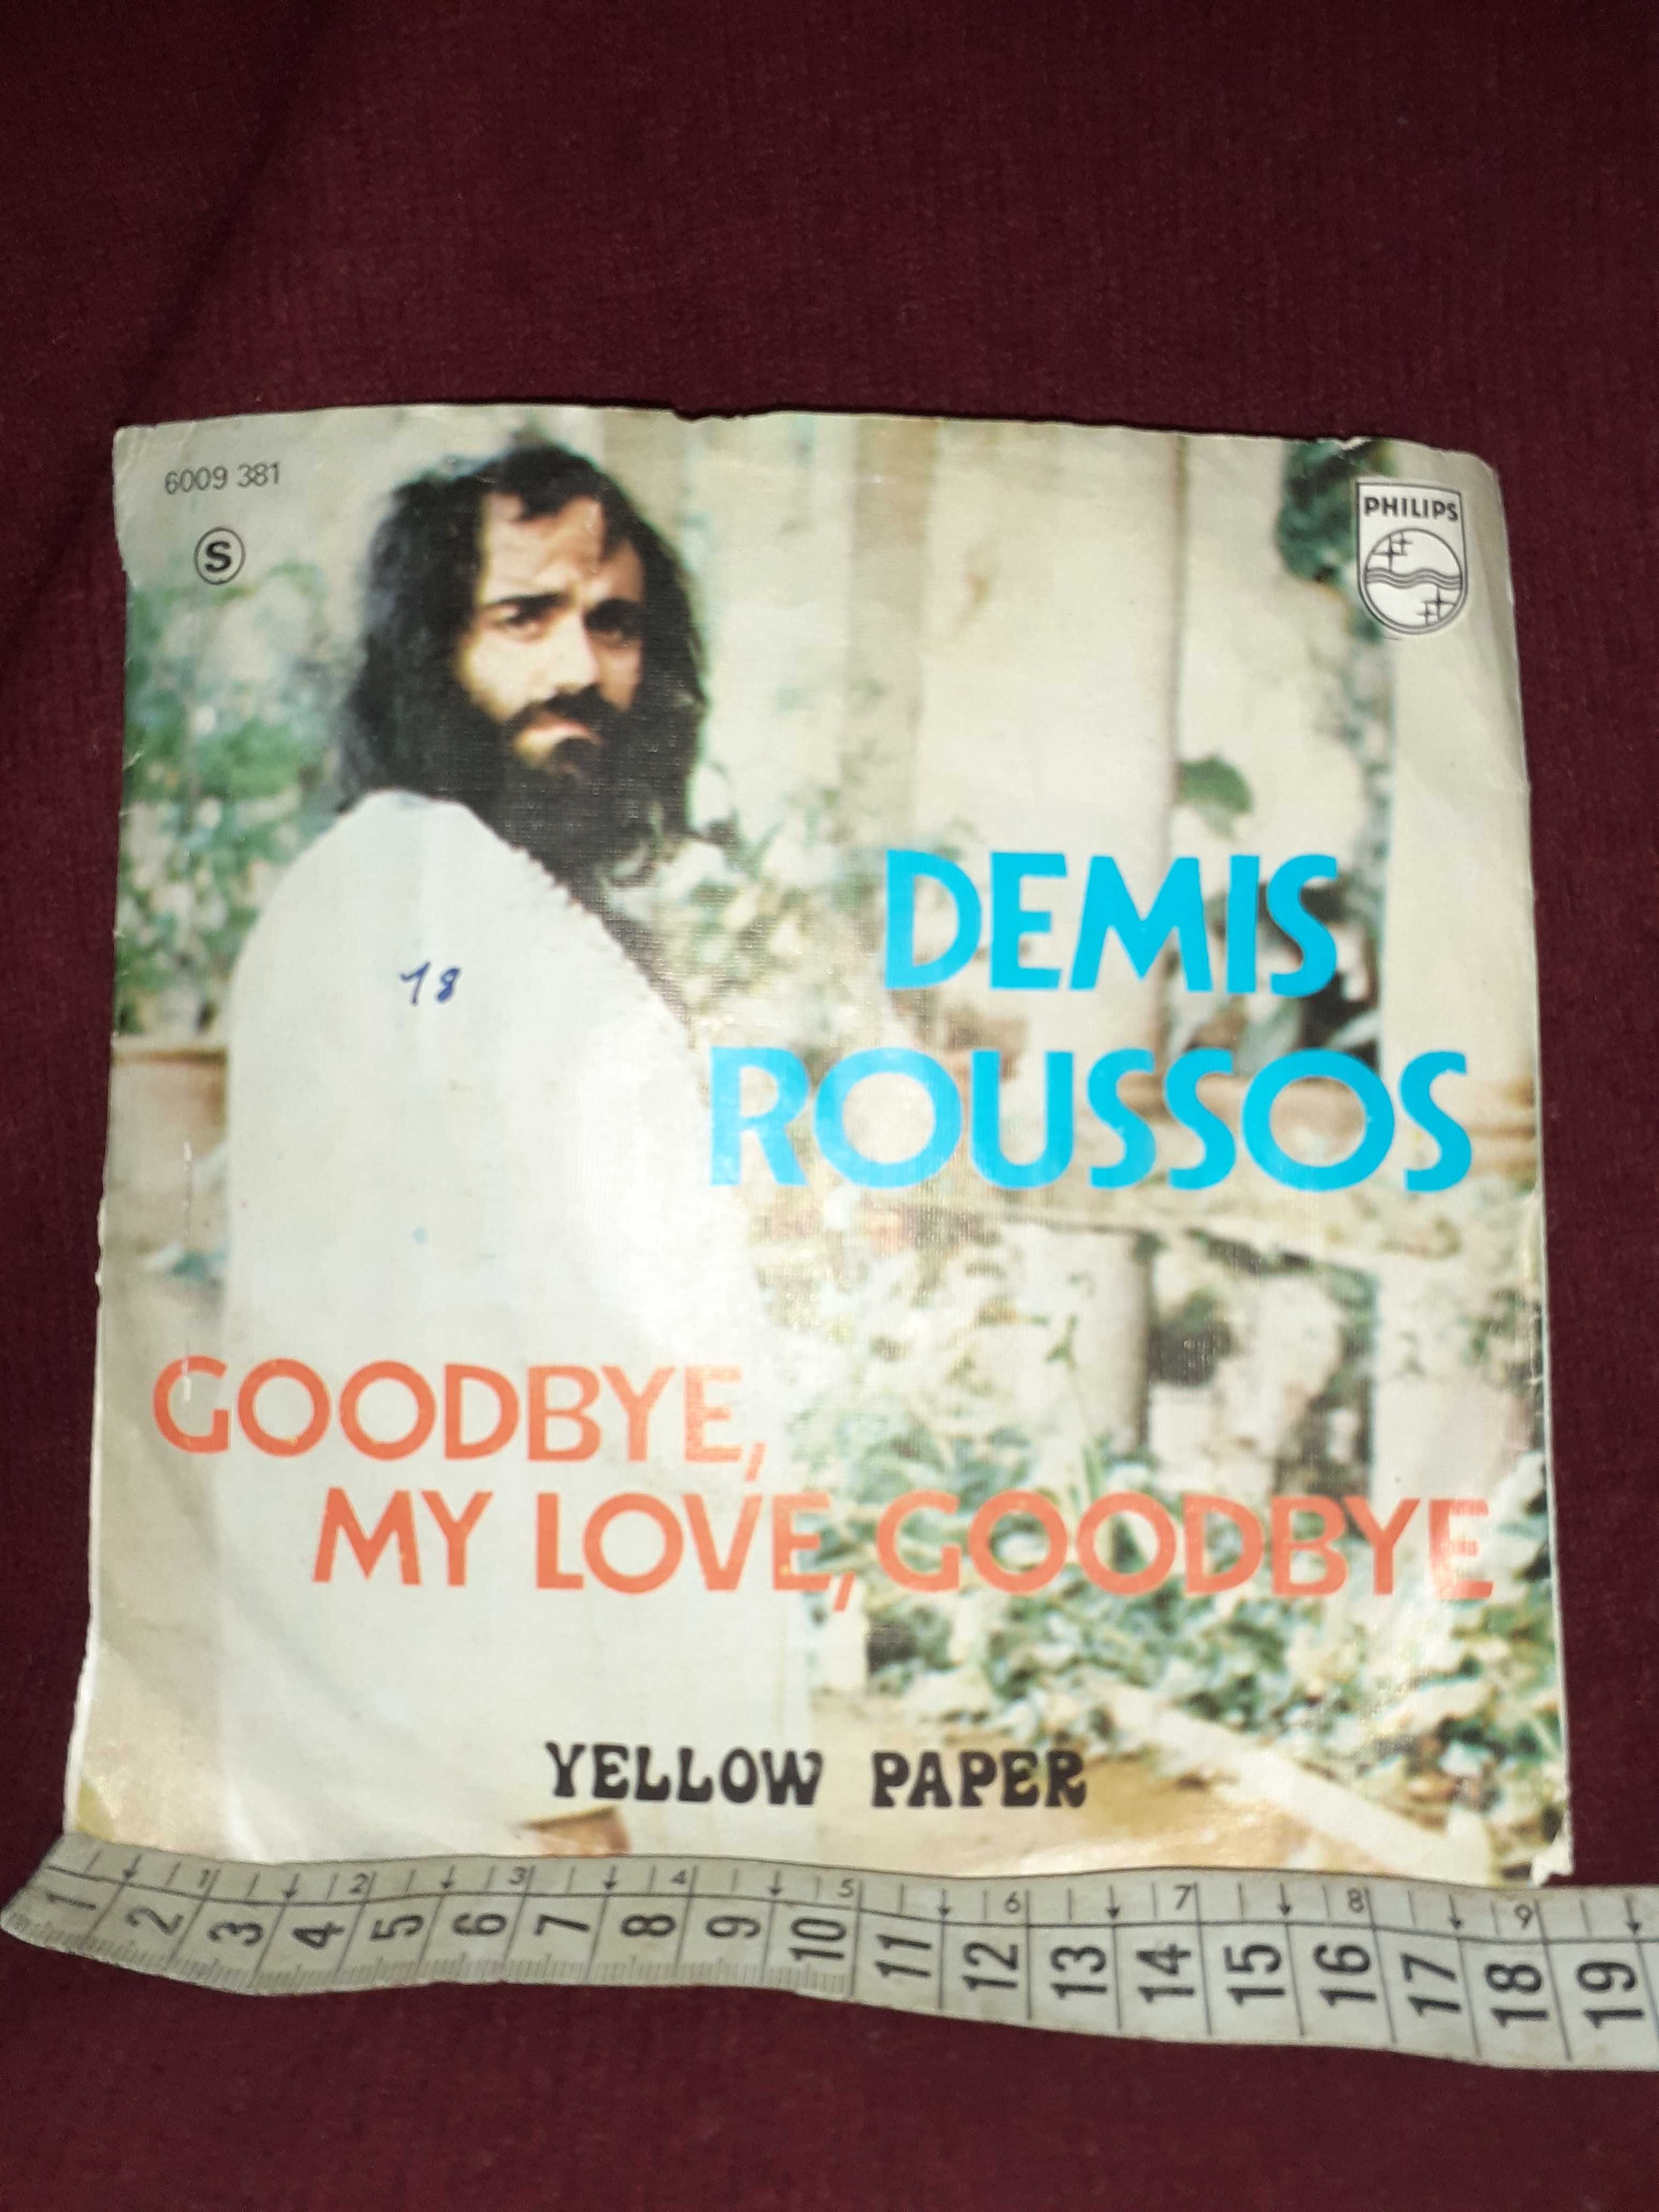 Singles " Demis Roussos "